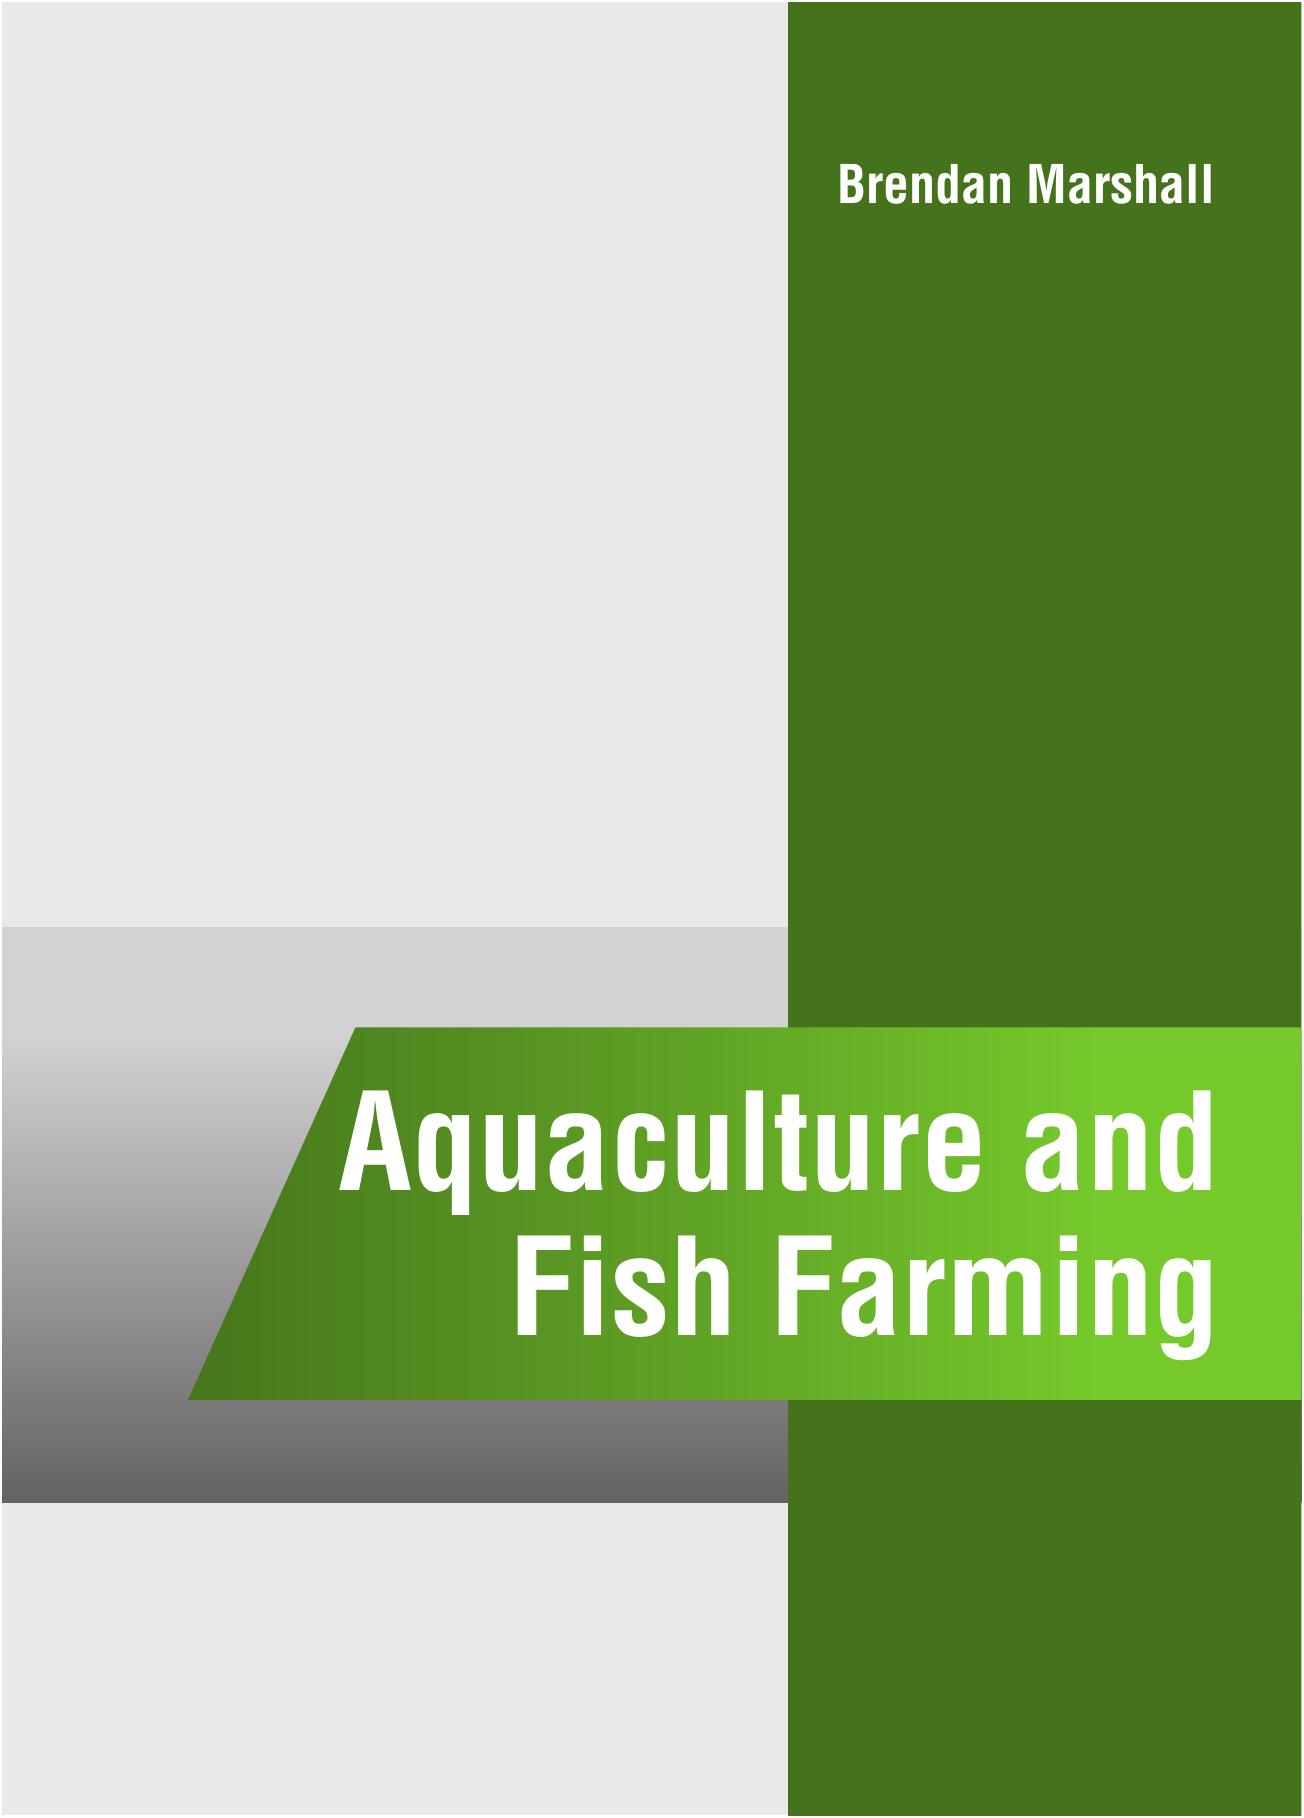 Aquaculture and Fish Farming 2016